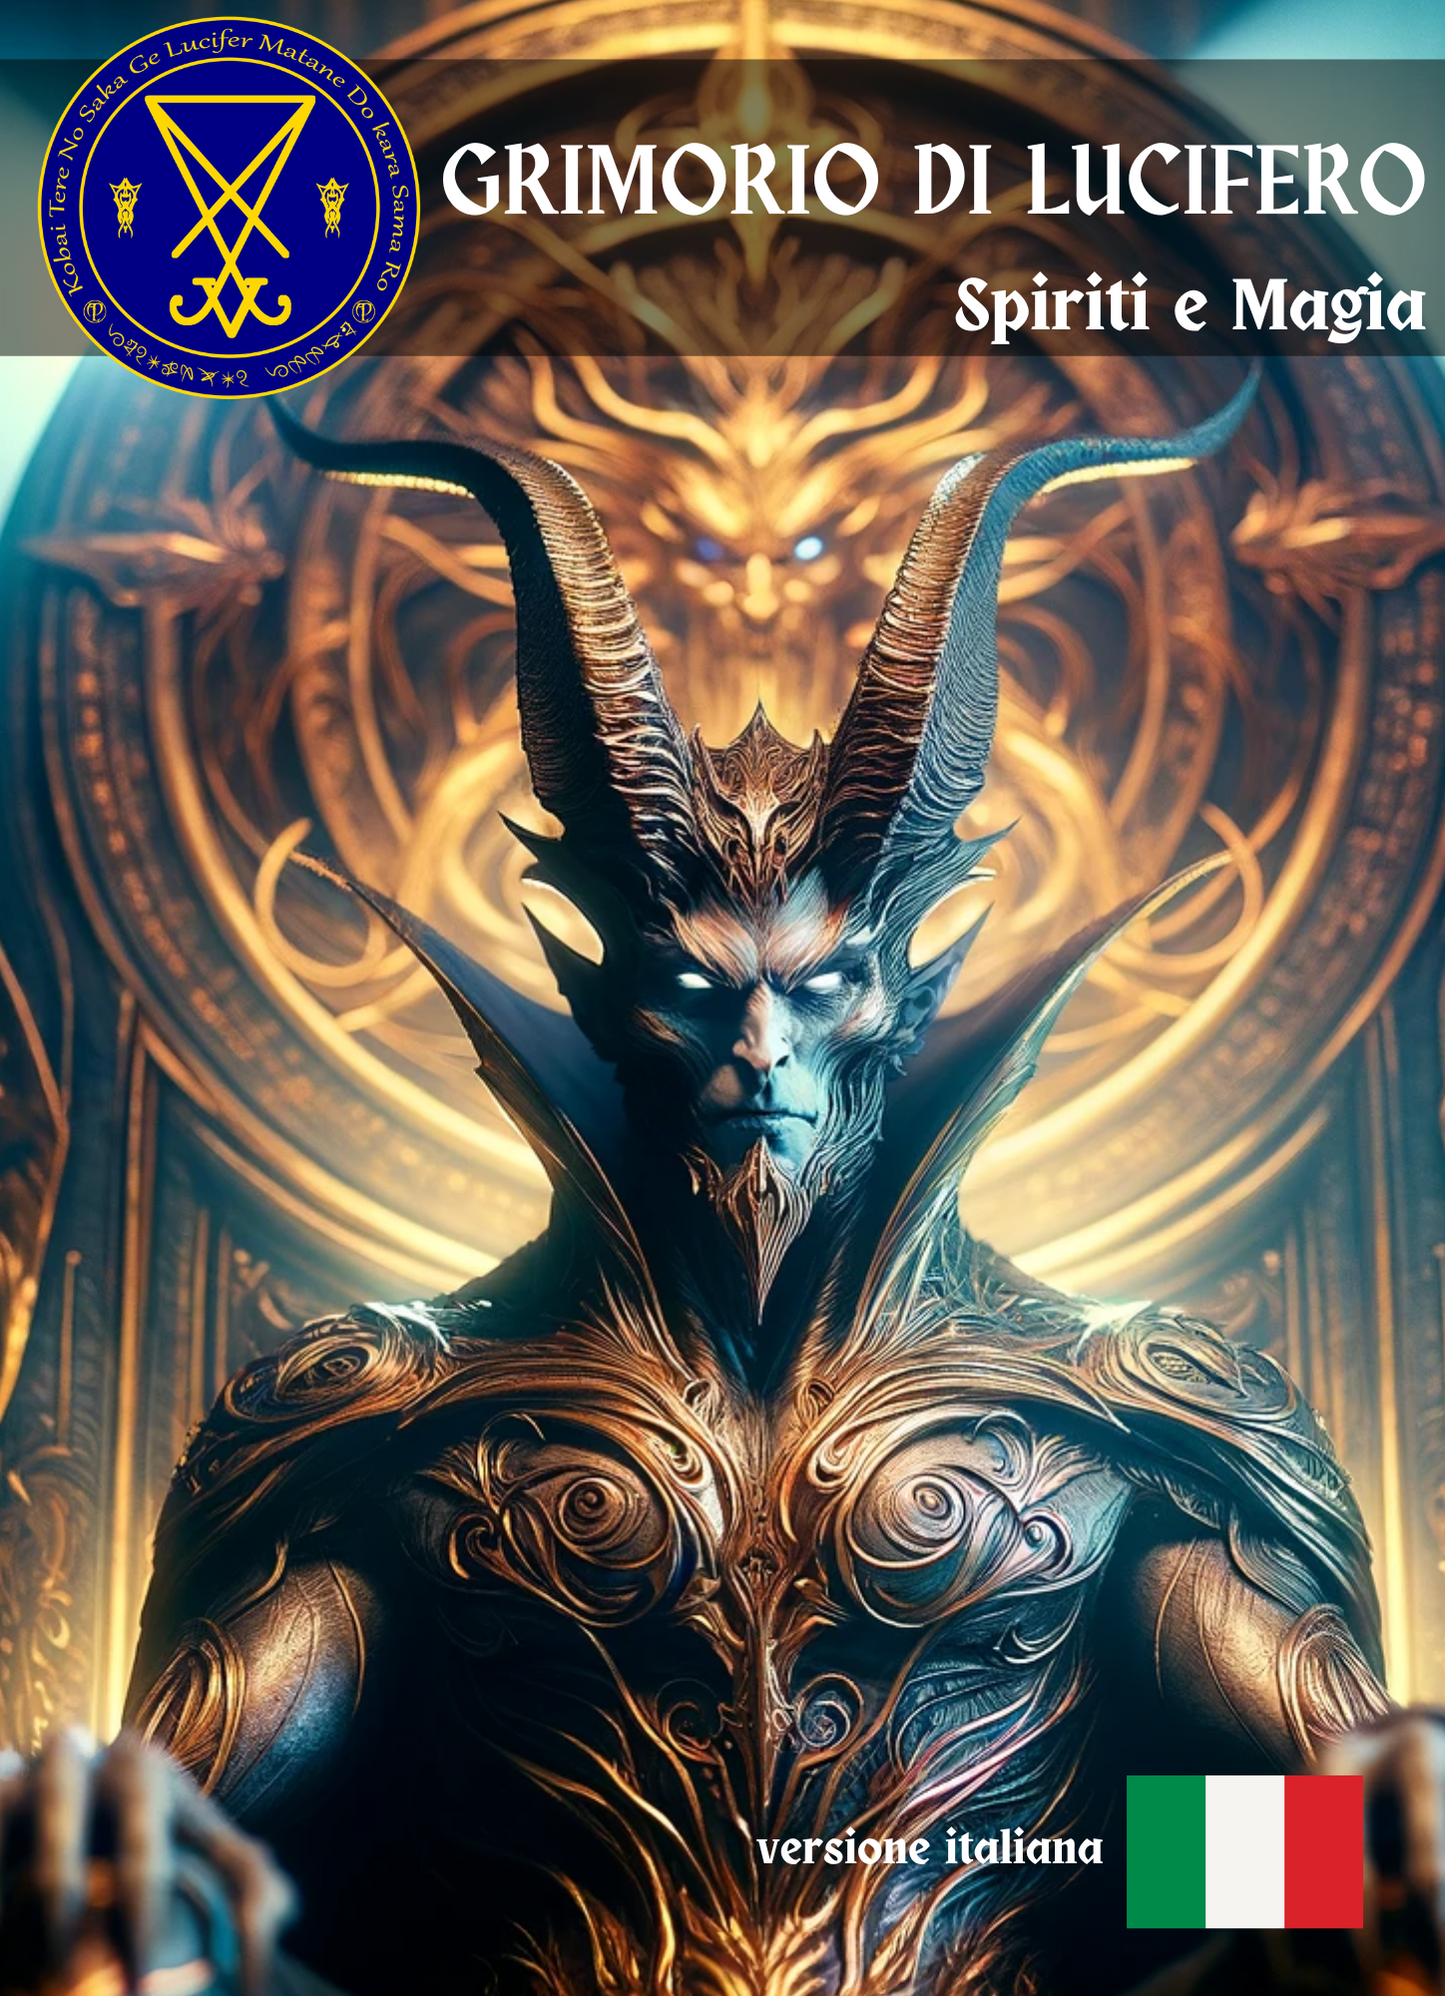 Grimoire Luciferi Cantus & Rituales ad lucem inveniendam in fine cuniculi - Abraxas Amulets ® Magic ♾️ Talismans Initiationes